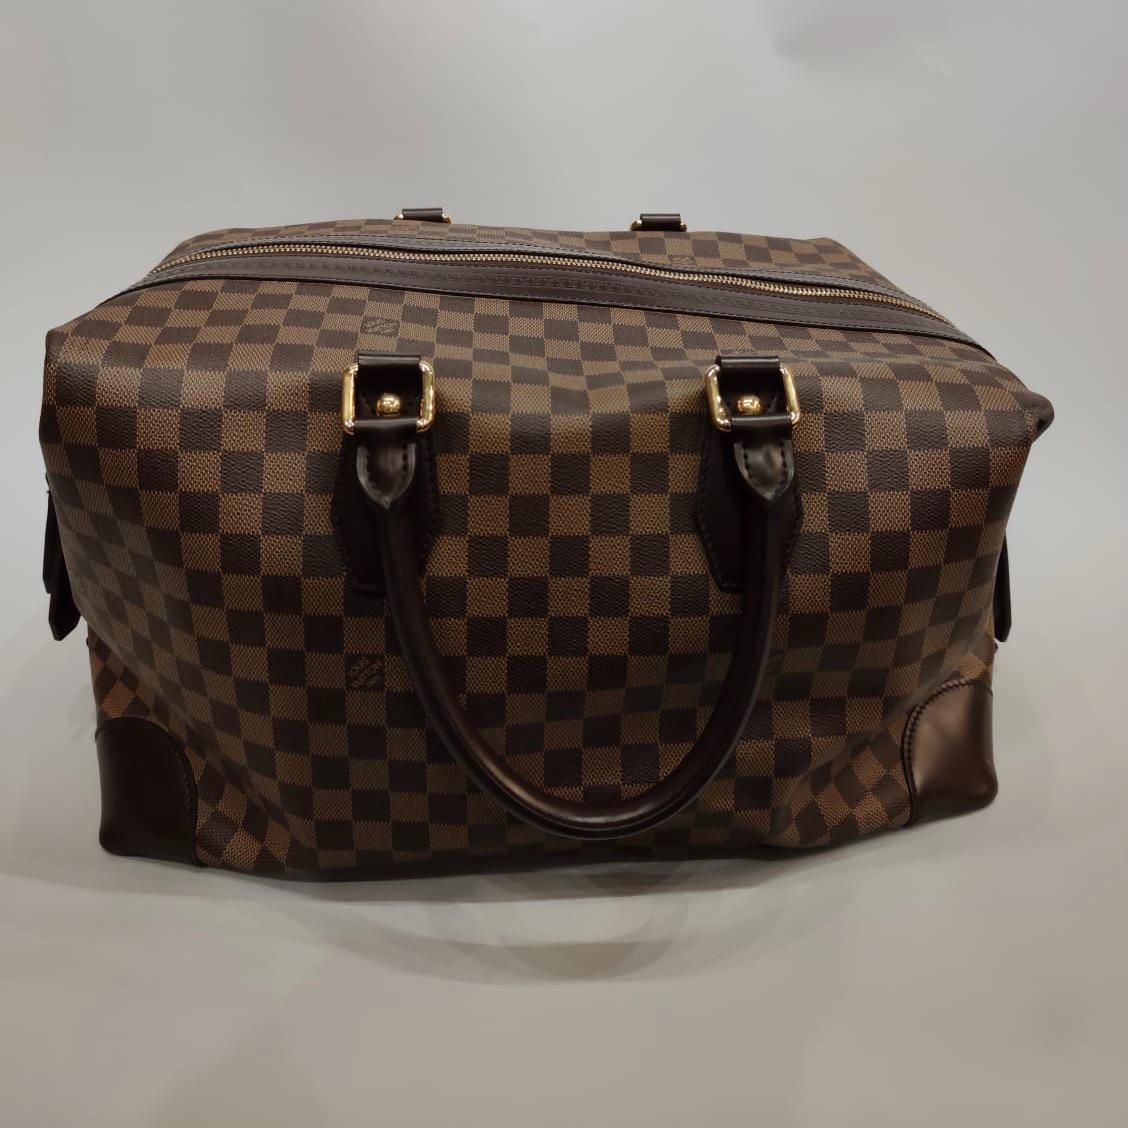 Louis Vuitton travel bag - Des Voyages - Recent Added Items